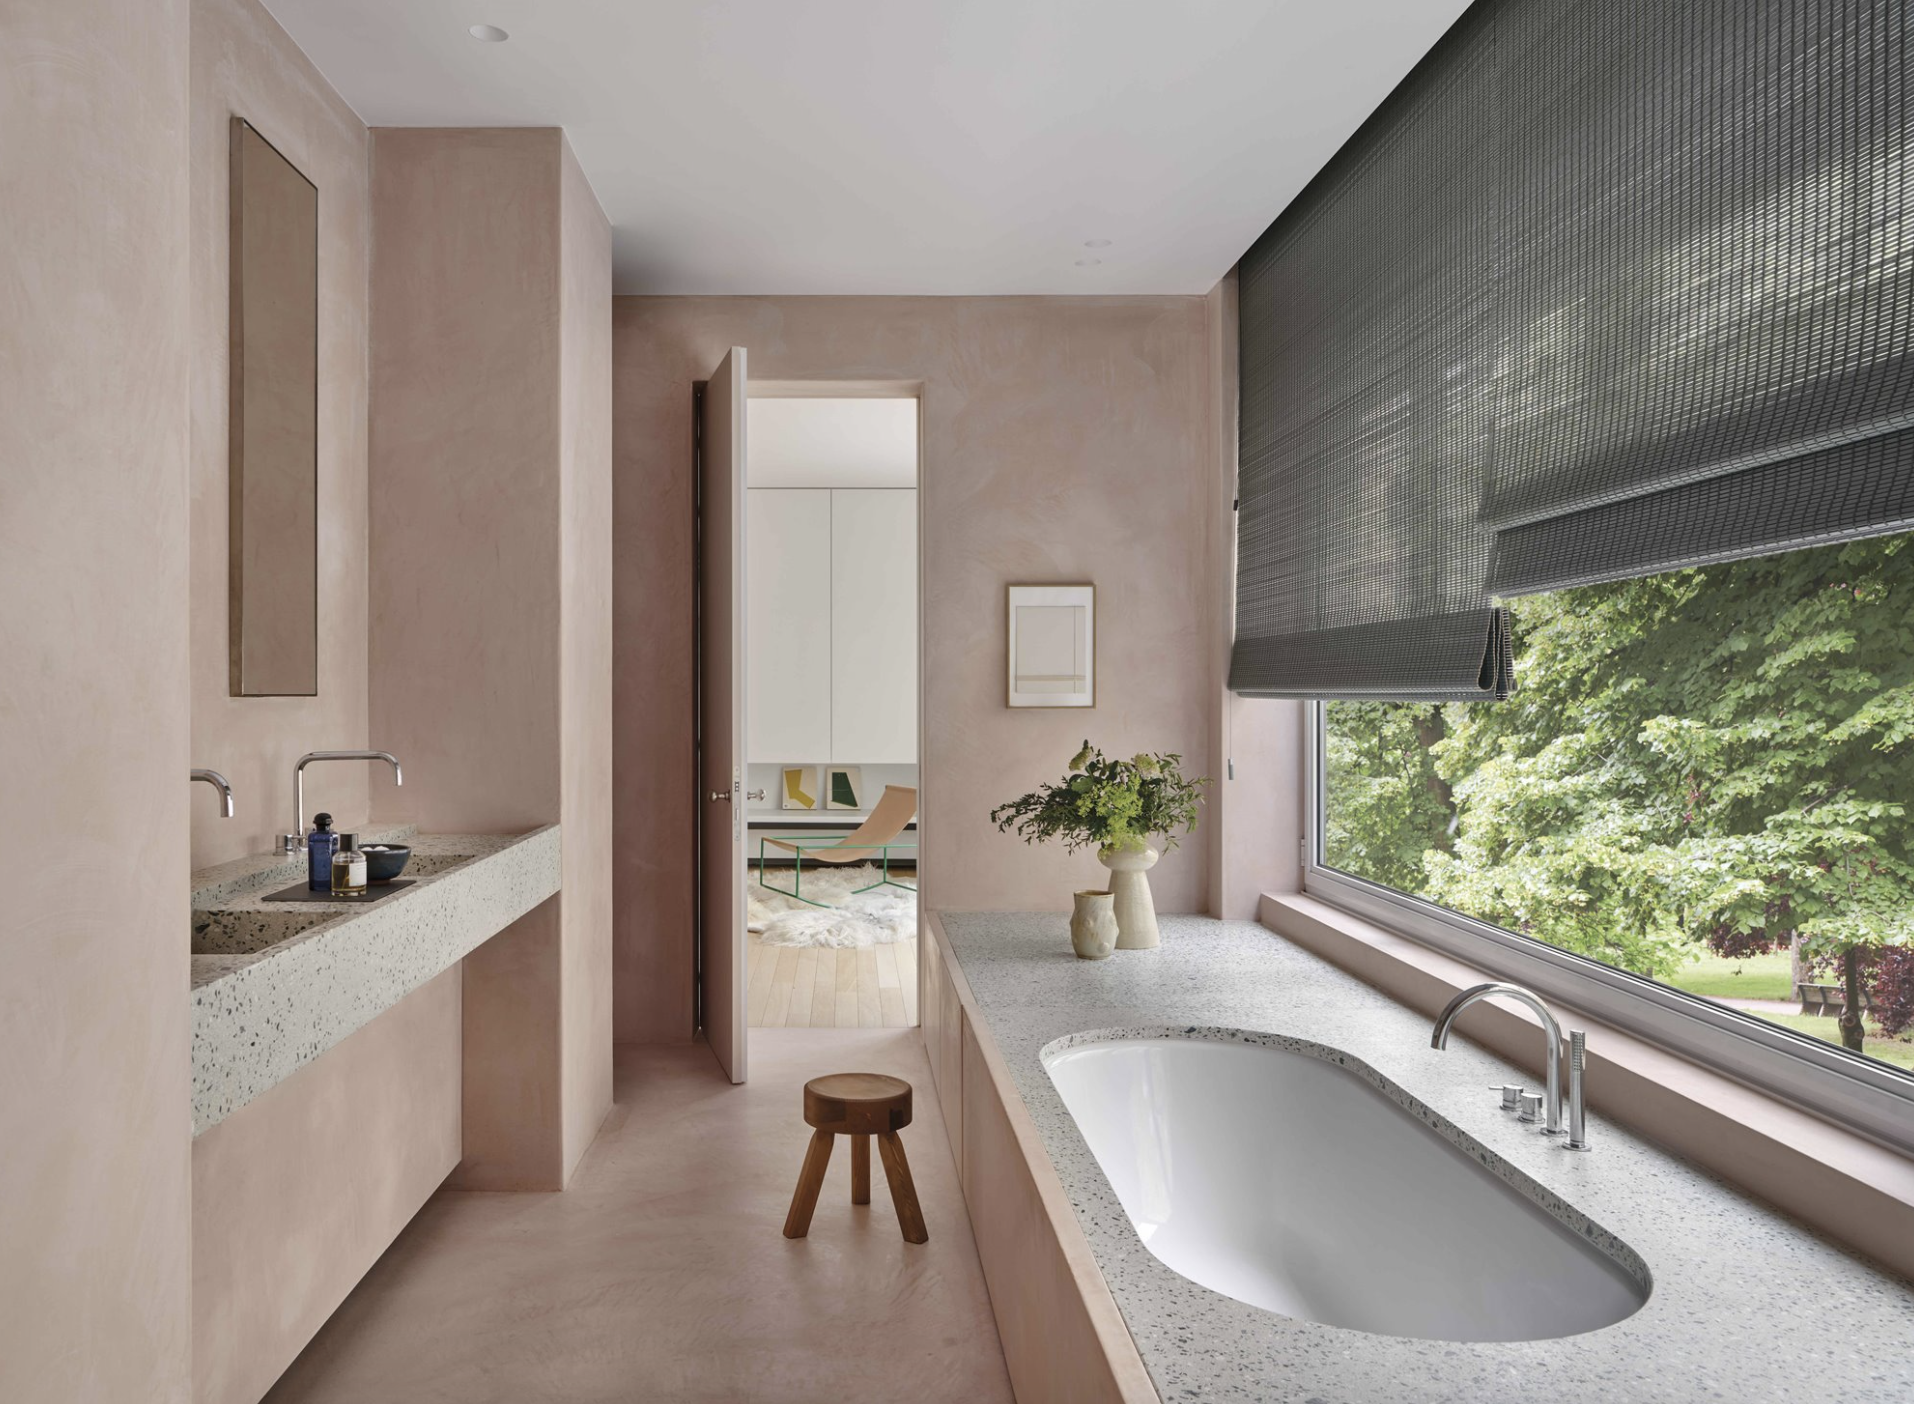 baño rosa empolvado y gris con lavabo y ba��era encastrada